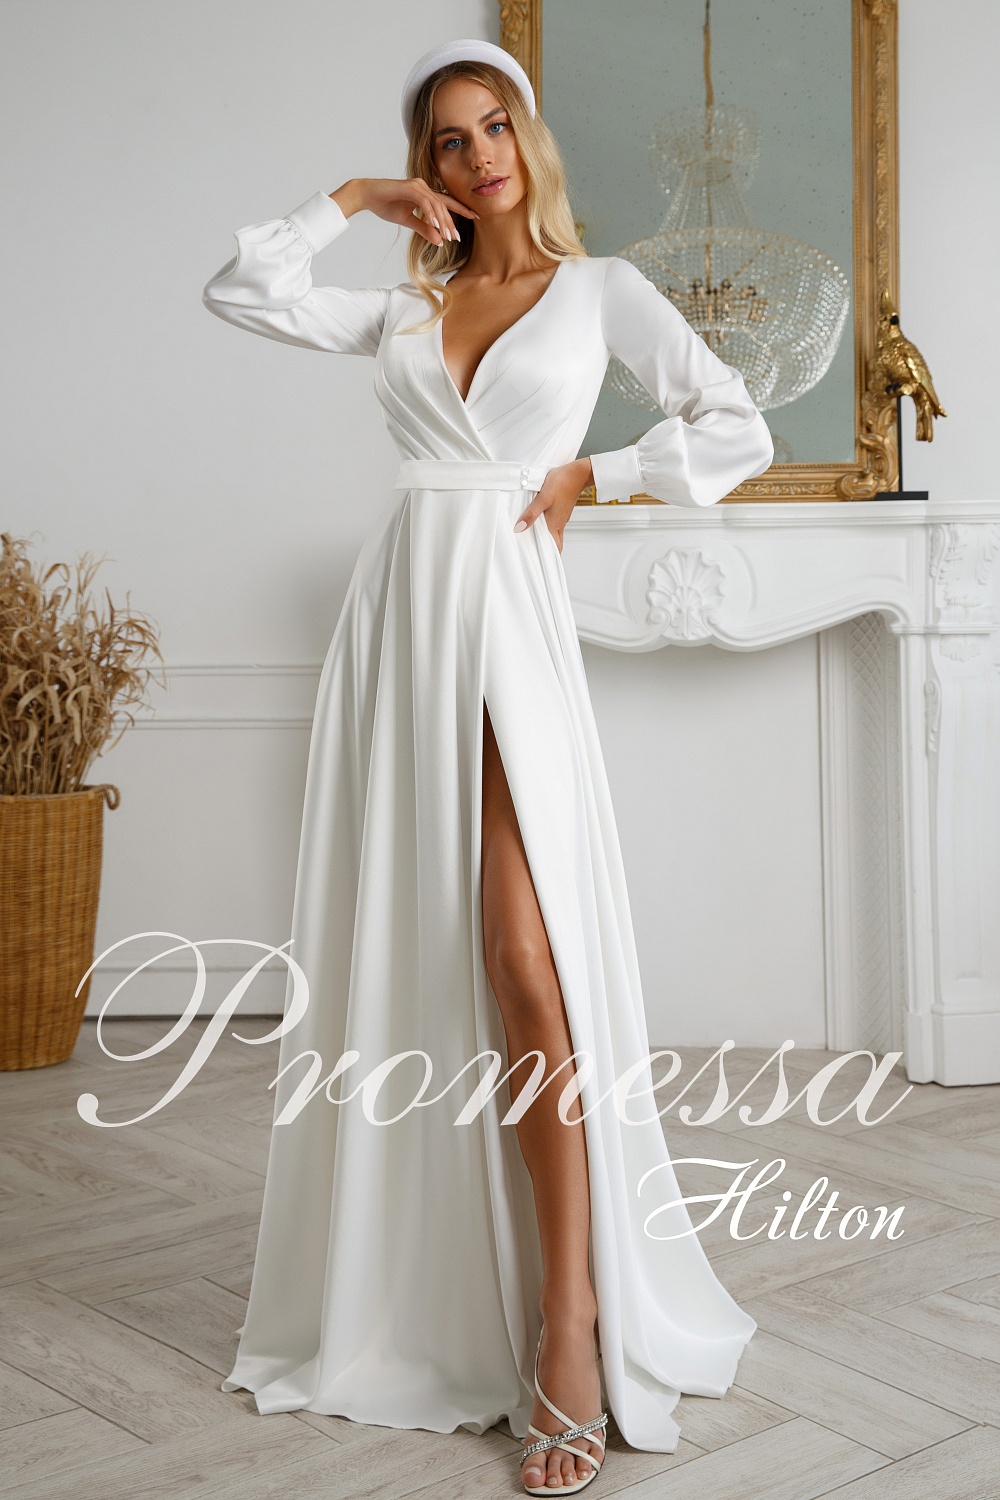 Свадебное платье Хилтон от Promessa